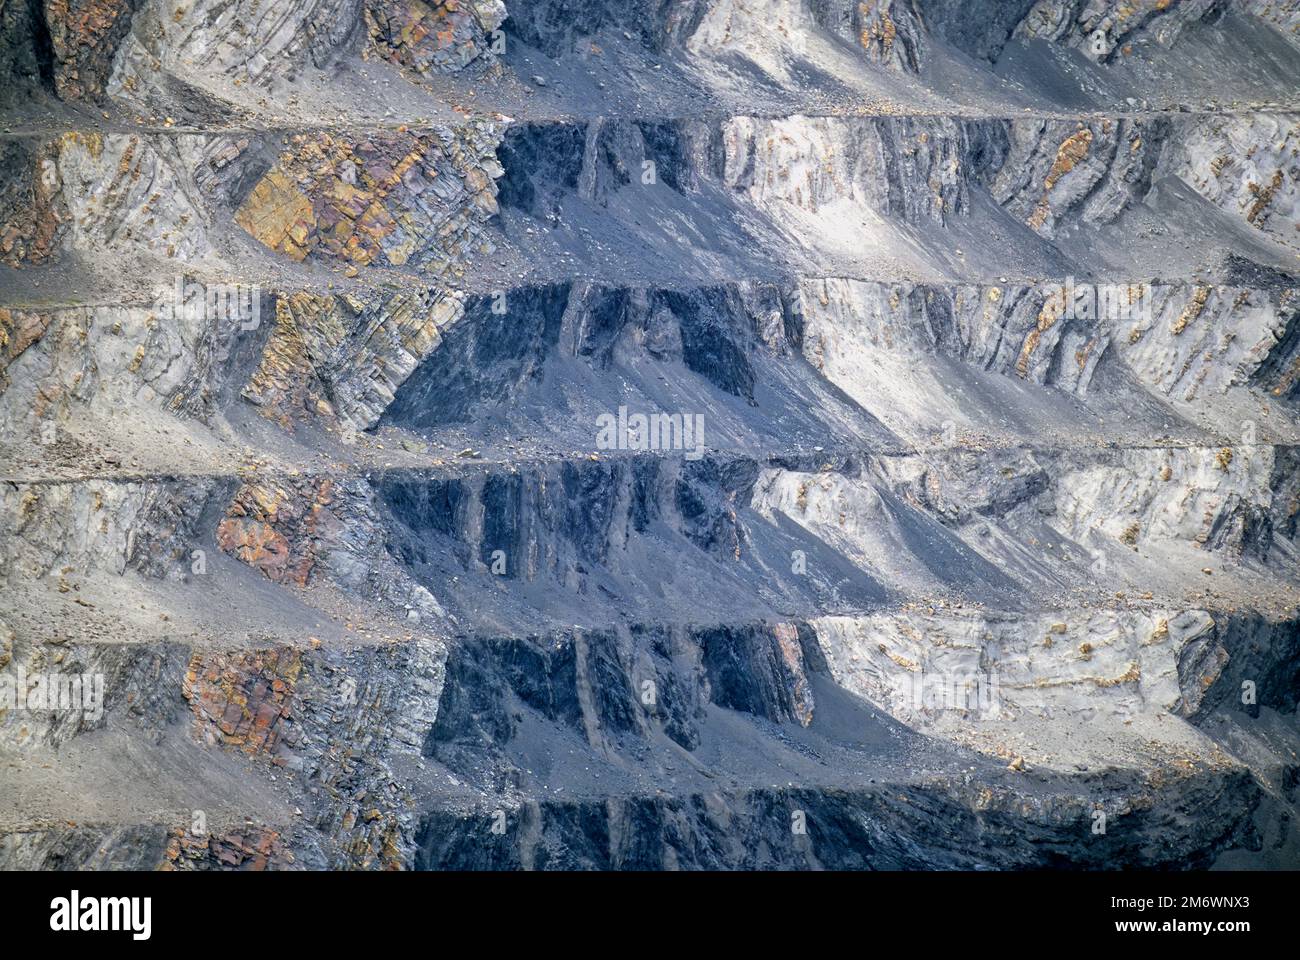 Une veine de charbon découverte dans la face rocheuse d'une mine de charbon à ciel ouvert dans les régions rurales de l'Alberta au Canada Banque D'Images